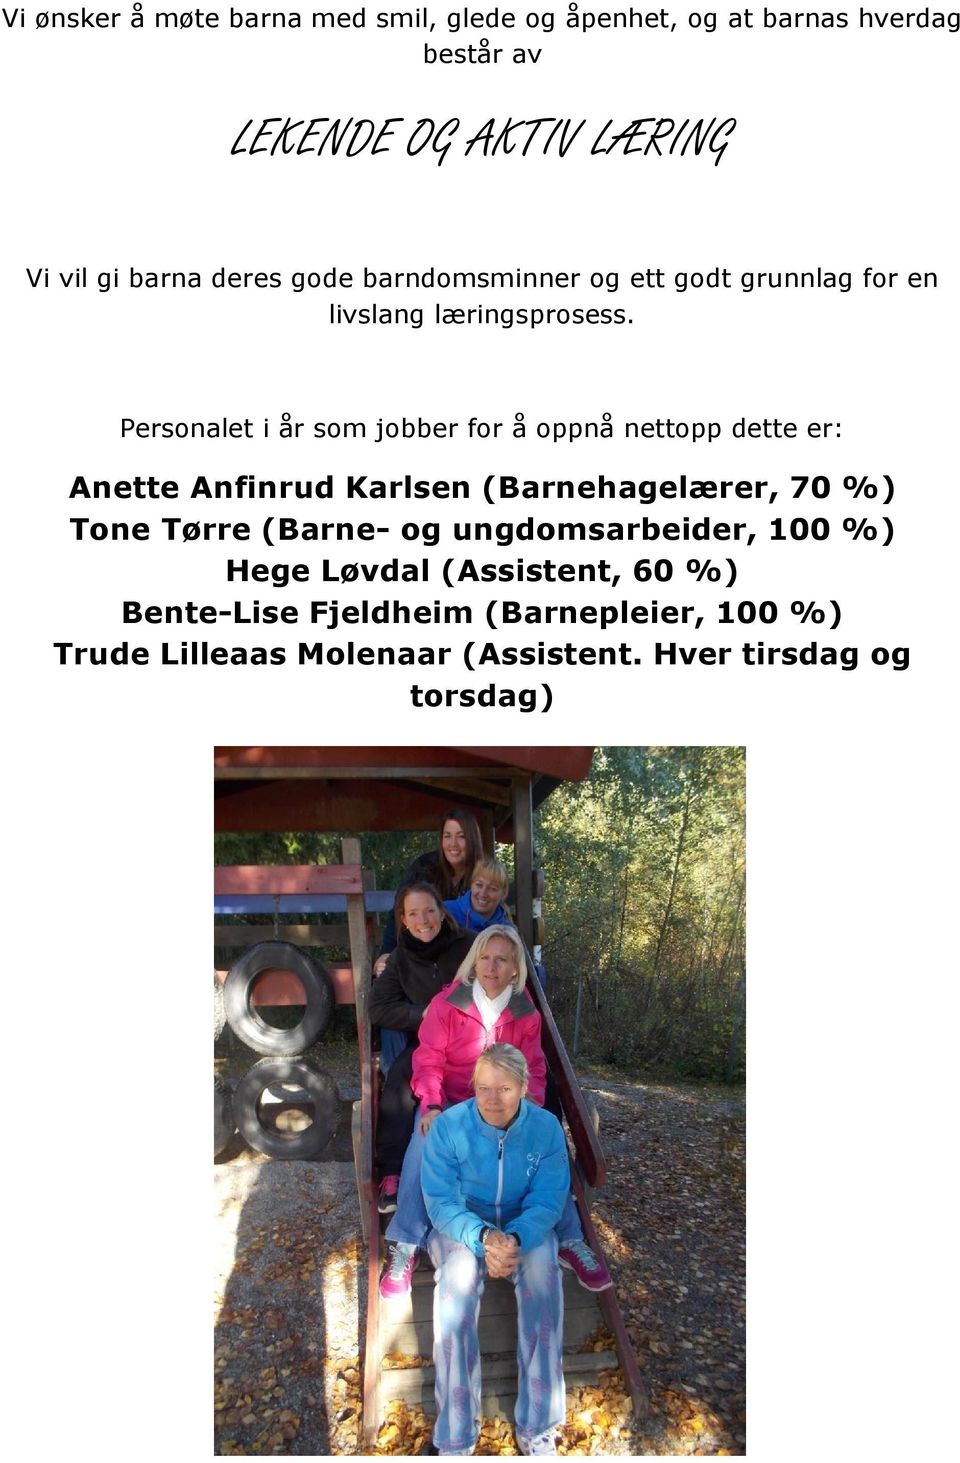 Personalet i år som jobber for å oppnå nettopp dette er: Anette Anfinrud Karlsen (Barnehagelærer, 70 %) Tone Tørre